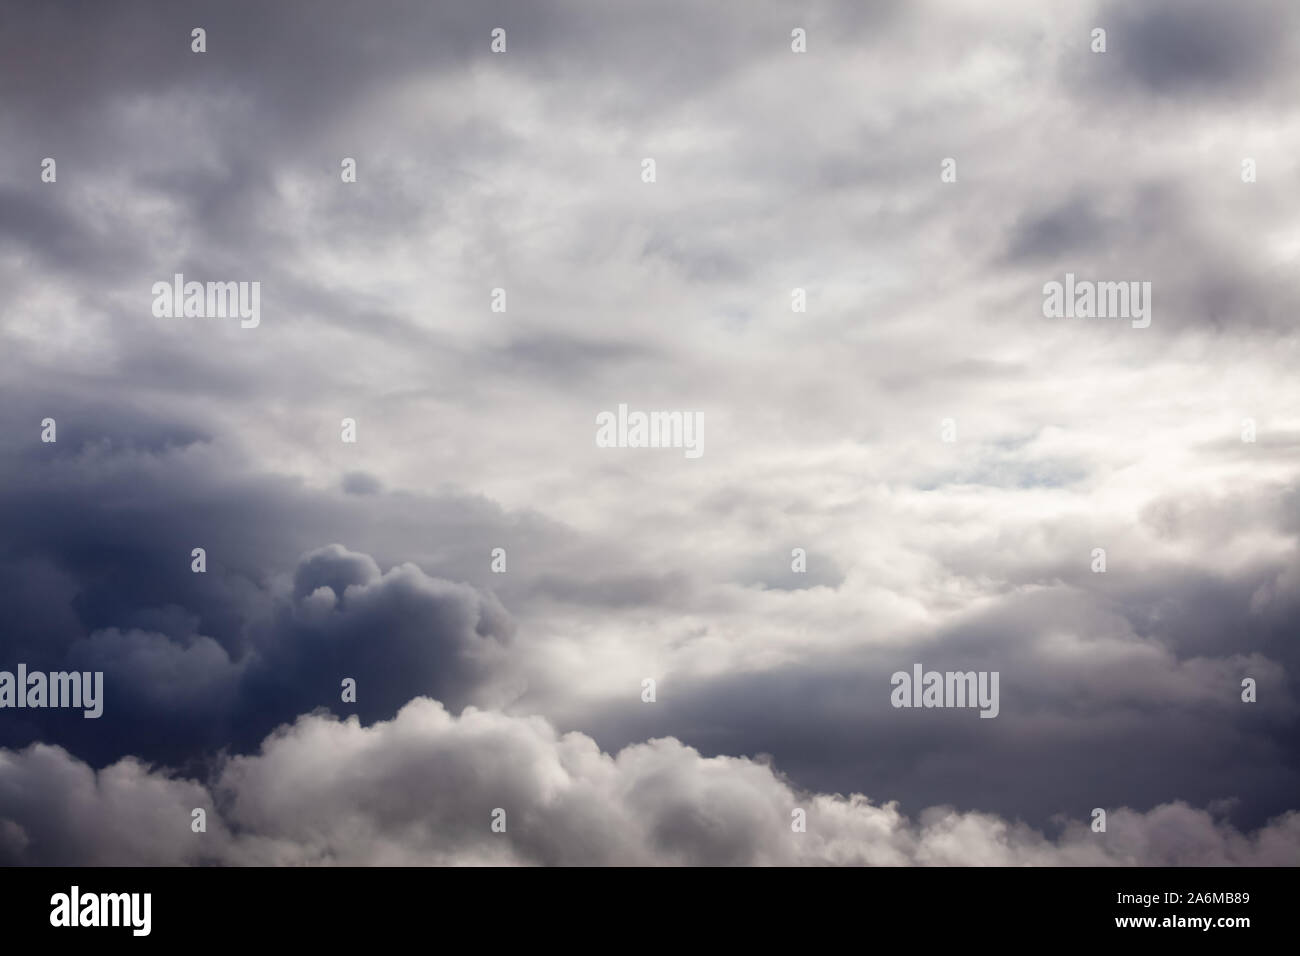 Grau stürmischen Wolken mit leichten spähen durch. Skyline cloudscape mit Regen Wolken Stockfoto